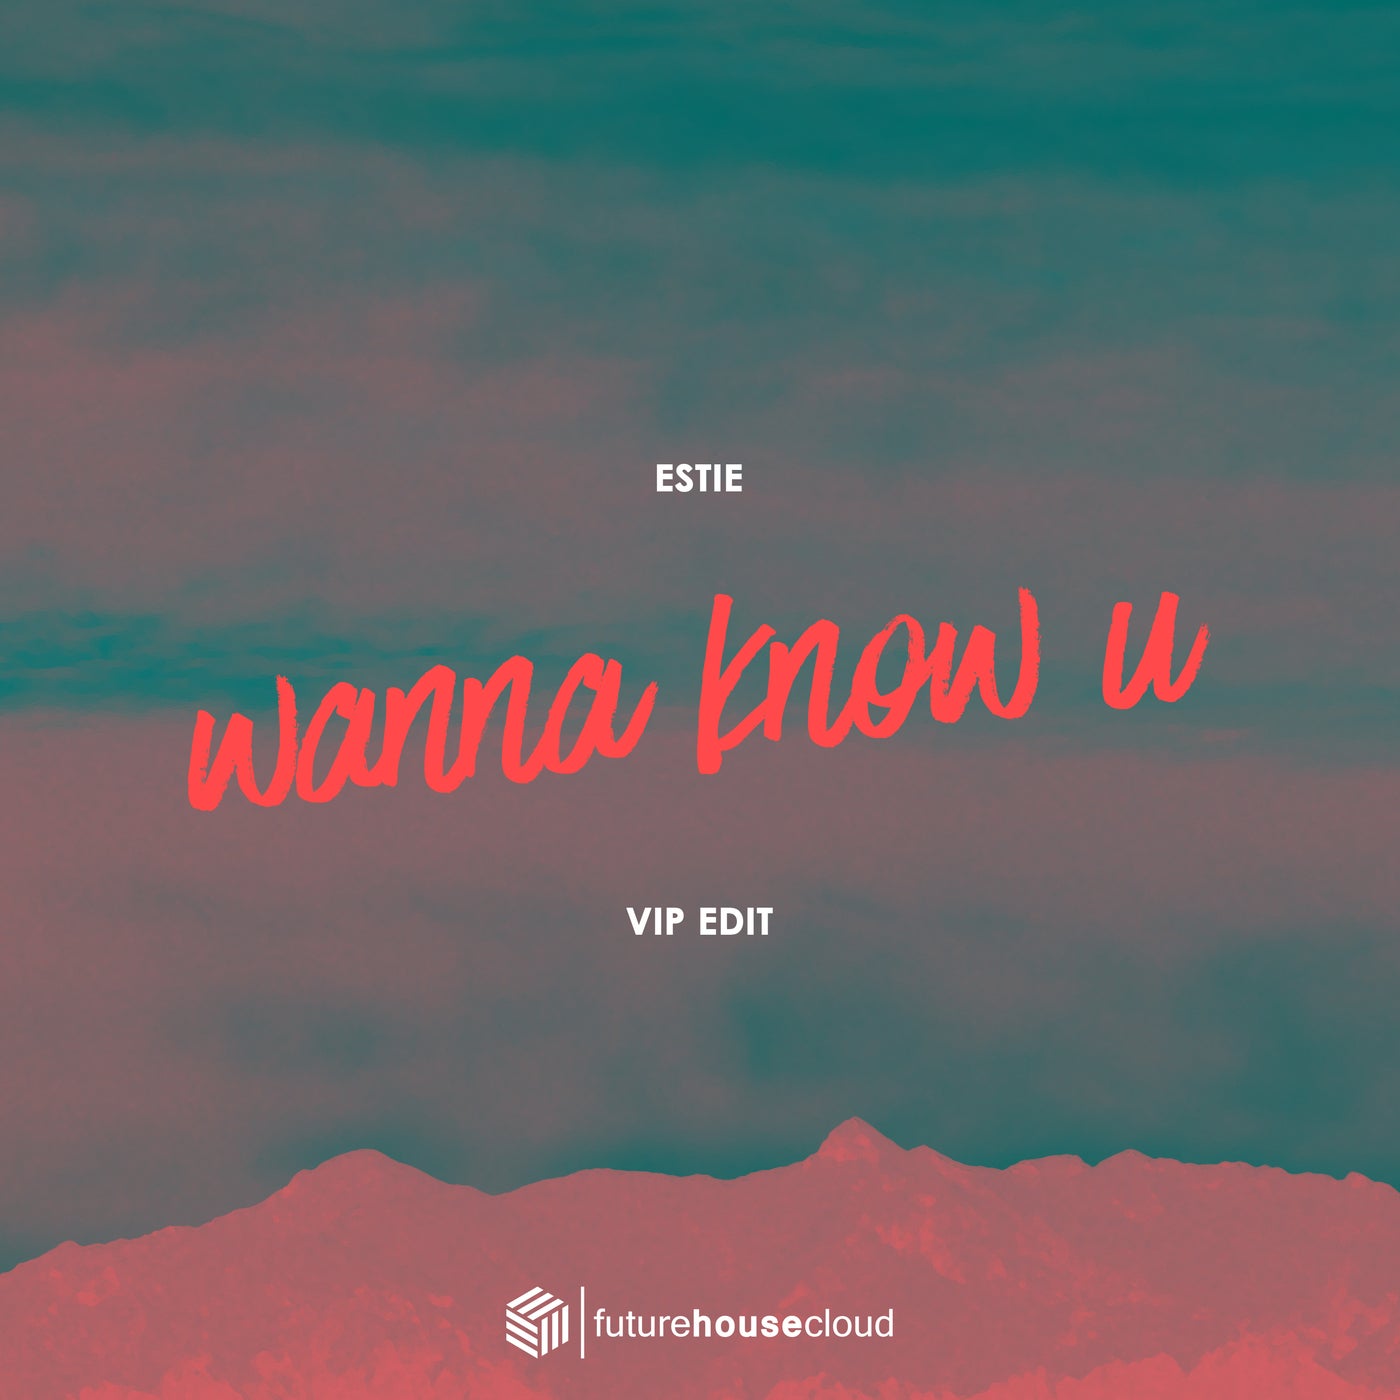 Wanna Know U (VIP Edit)